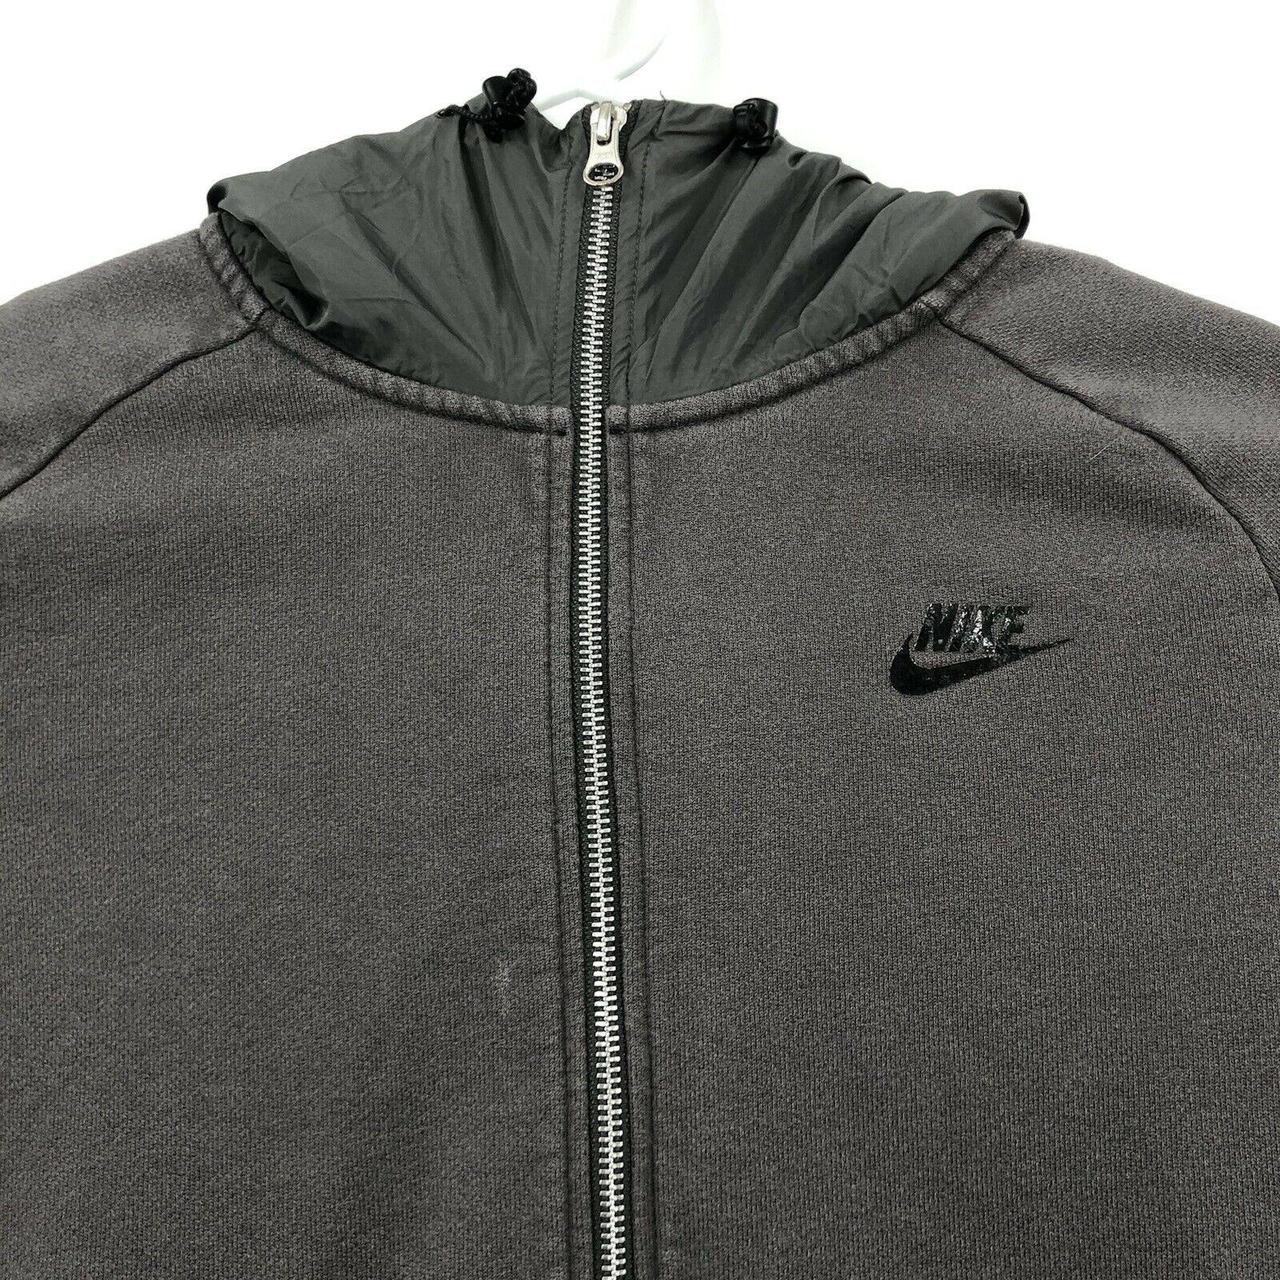 Men's Nike Sportswear Air Max Full Zip Hoodie 861580... - Depop